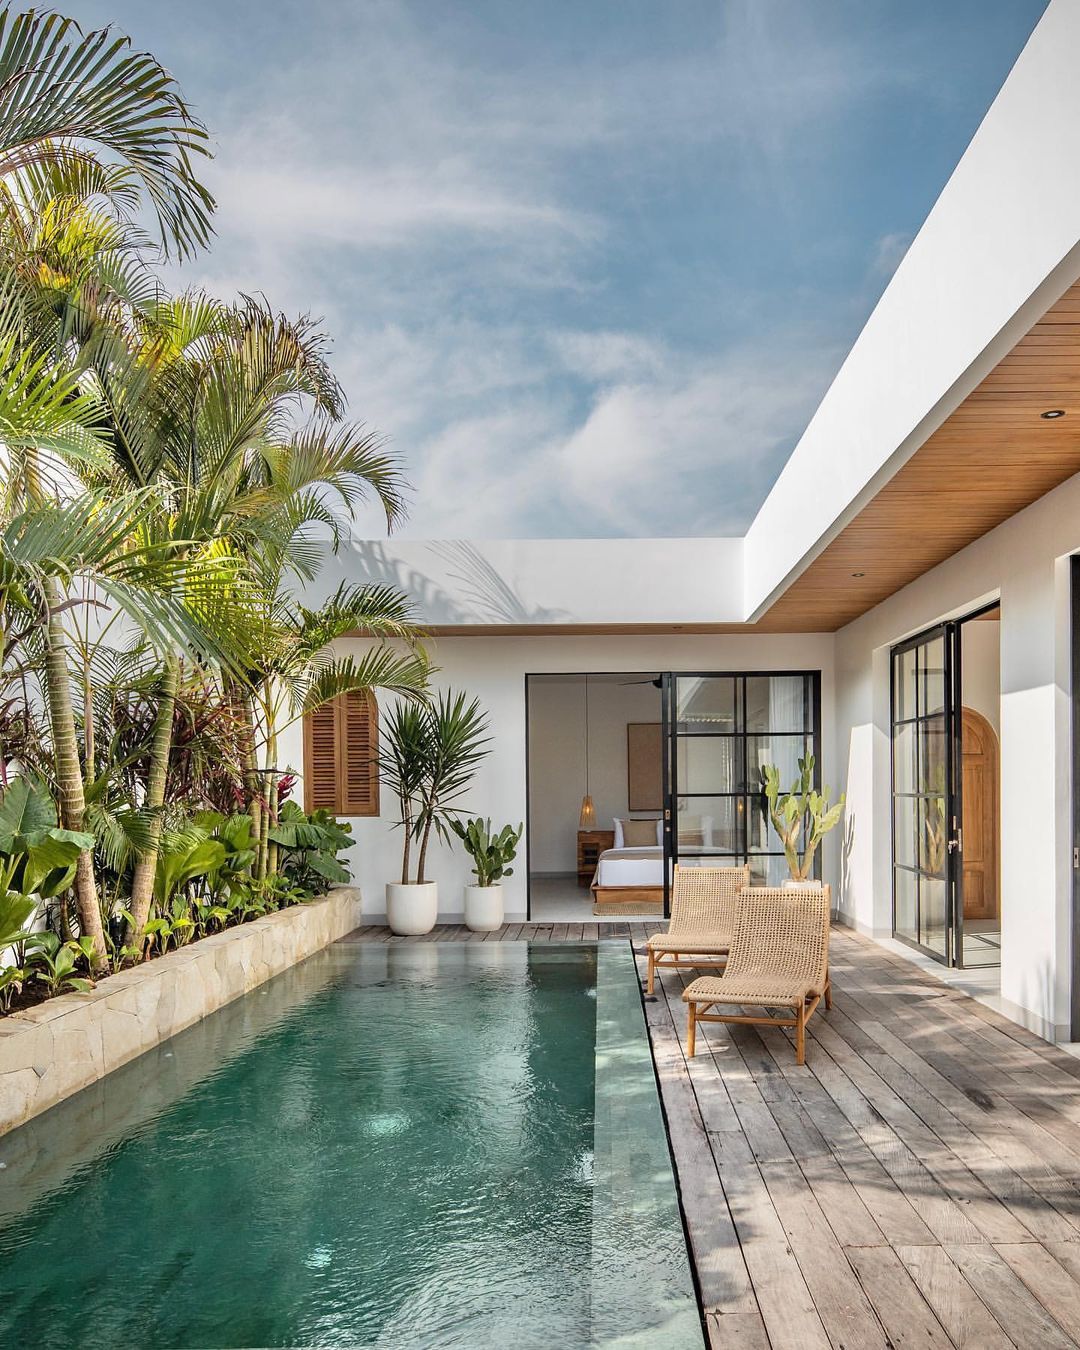 mẫu nhà 1 tầng gần gũi thiên nhiên phong cách kiến trúc tropical